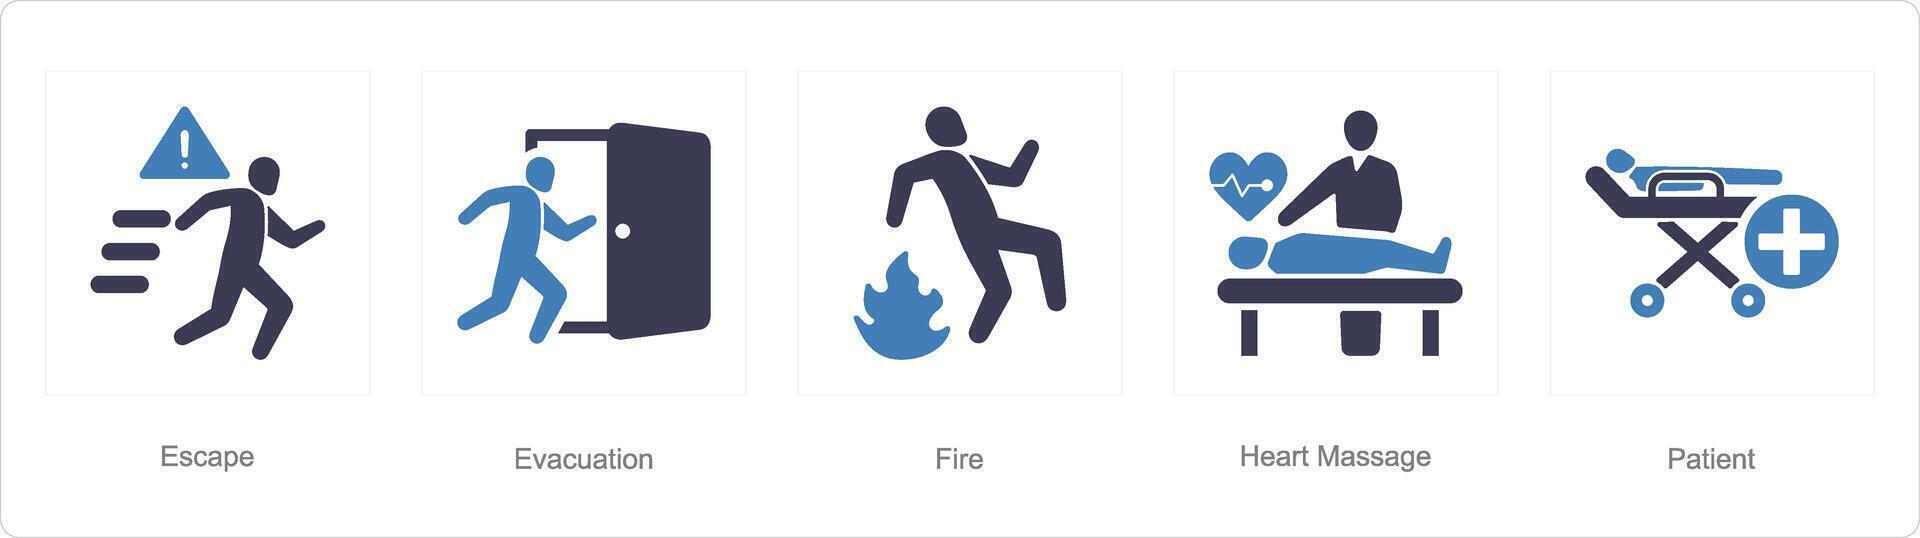 en uppsättning av 5 nödsituation ikoner som fly, evakuering, brand vektor